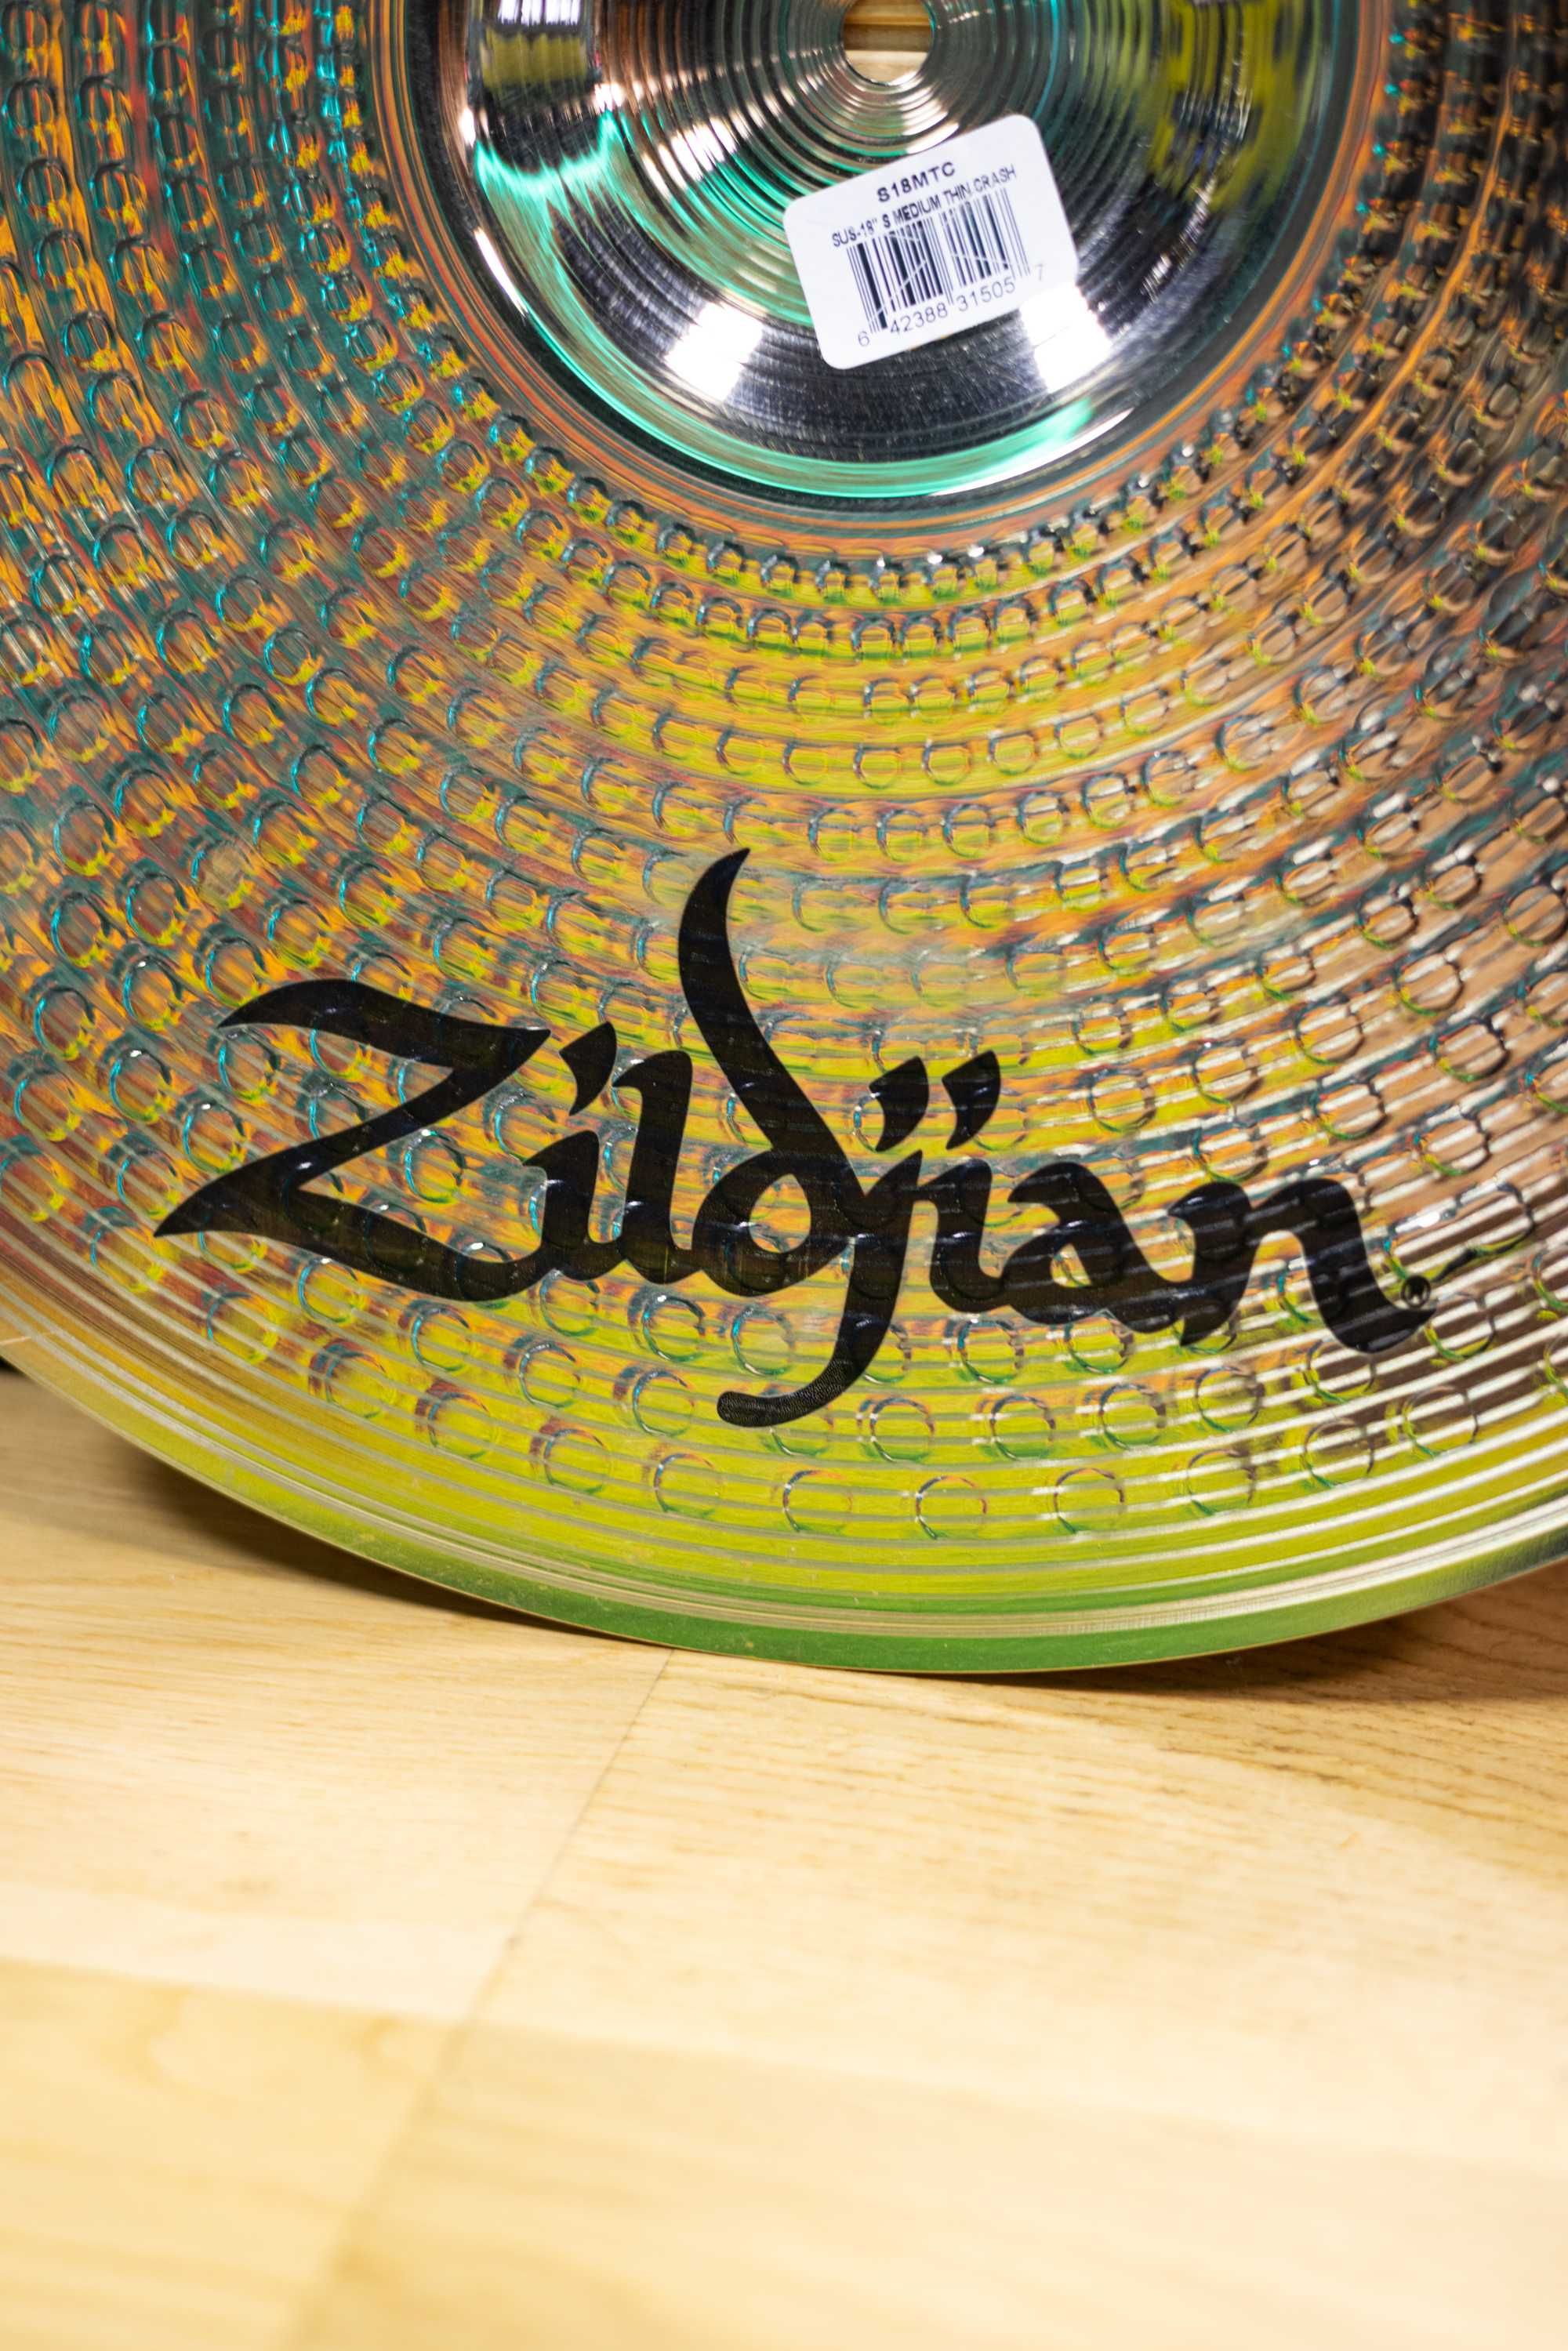 Zildjian S Medium Thin Crash 18"